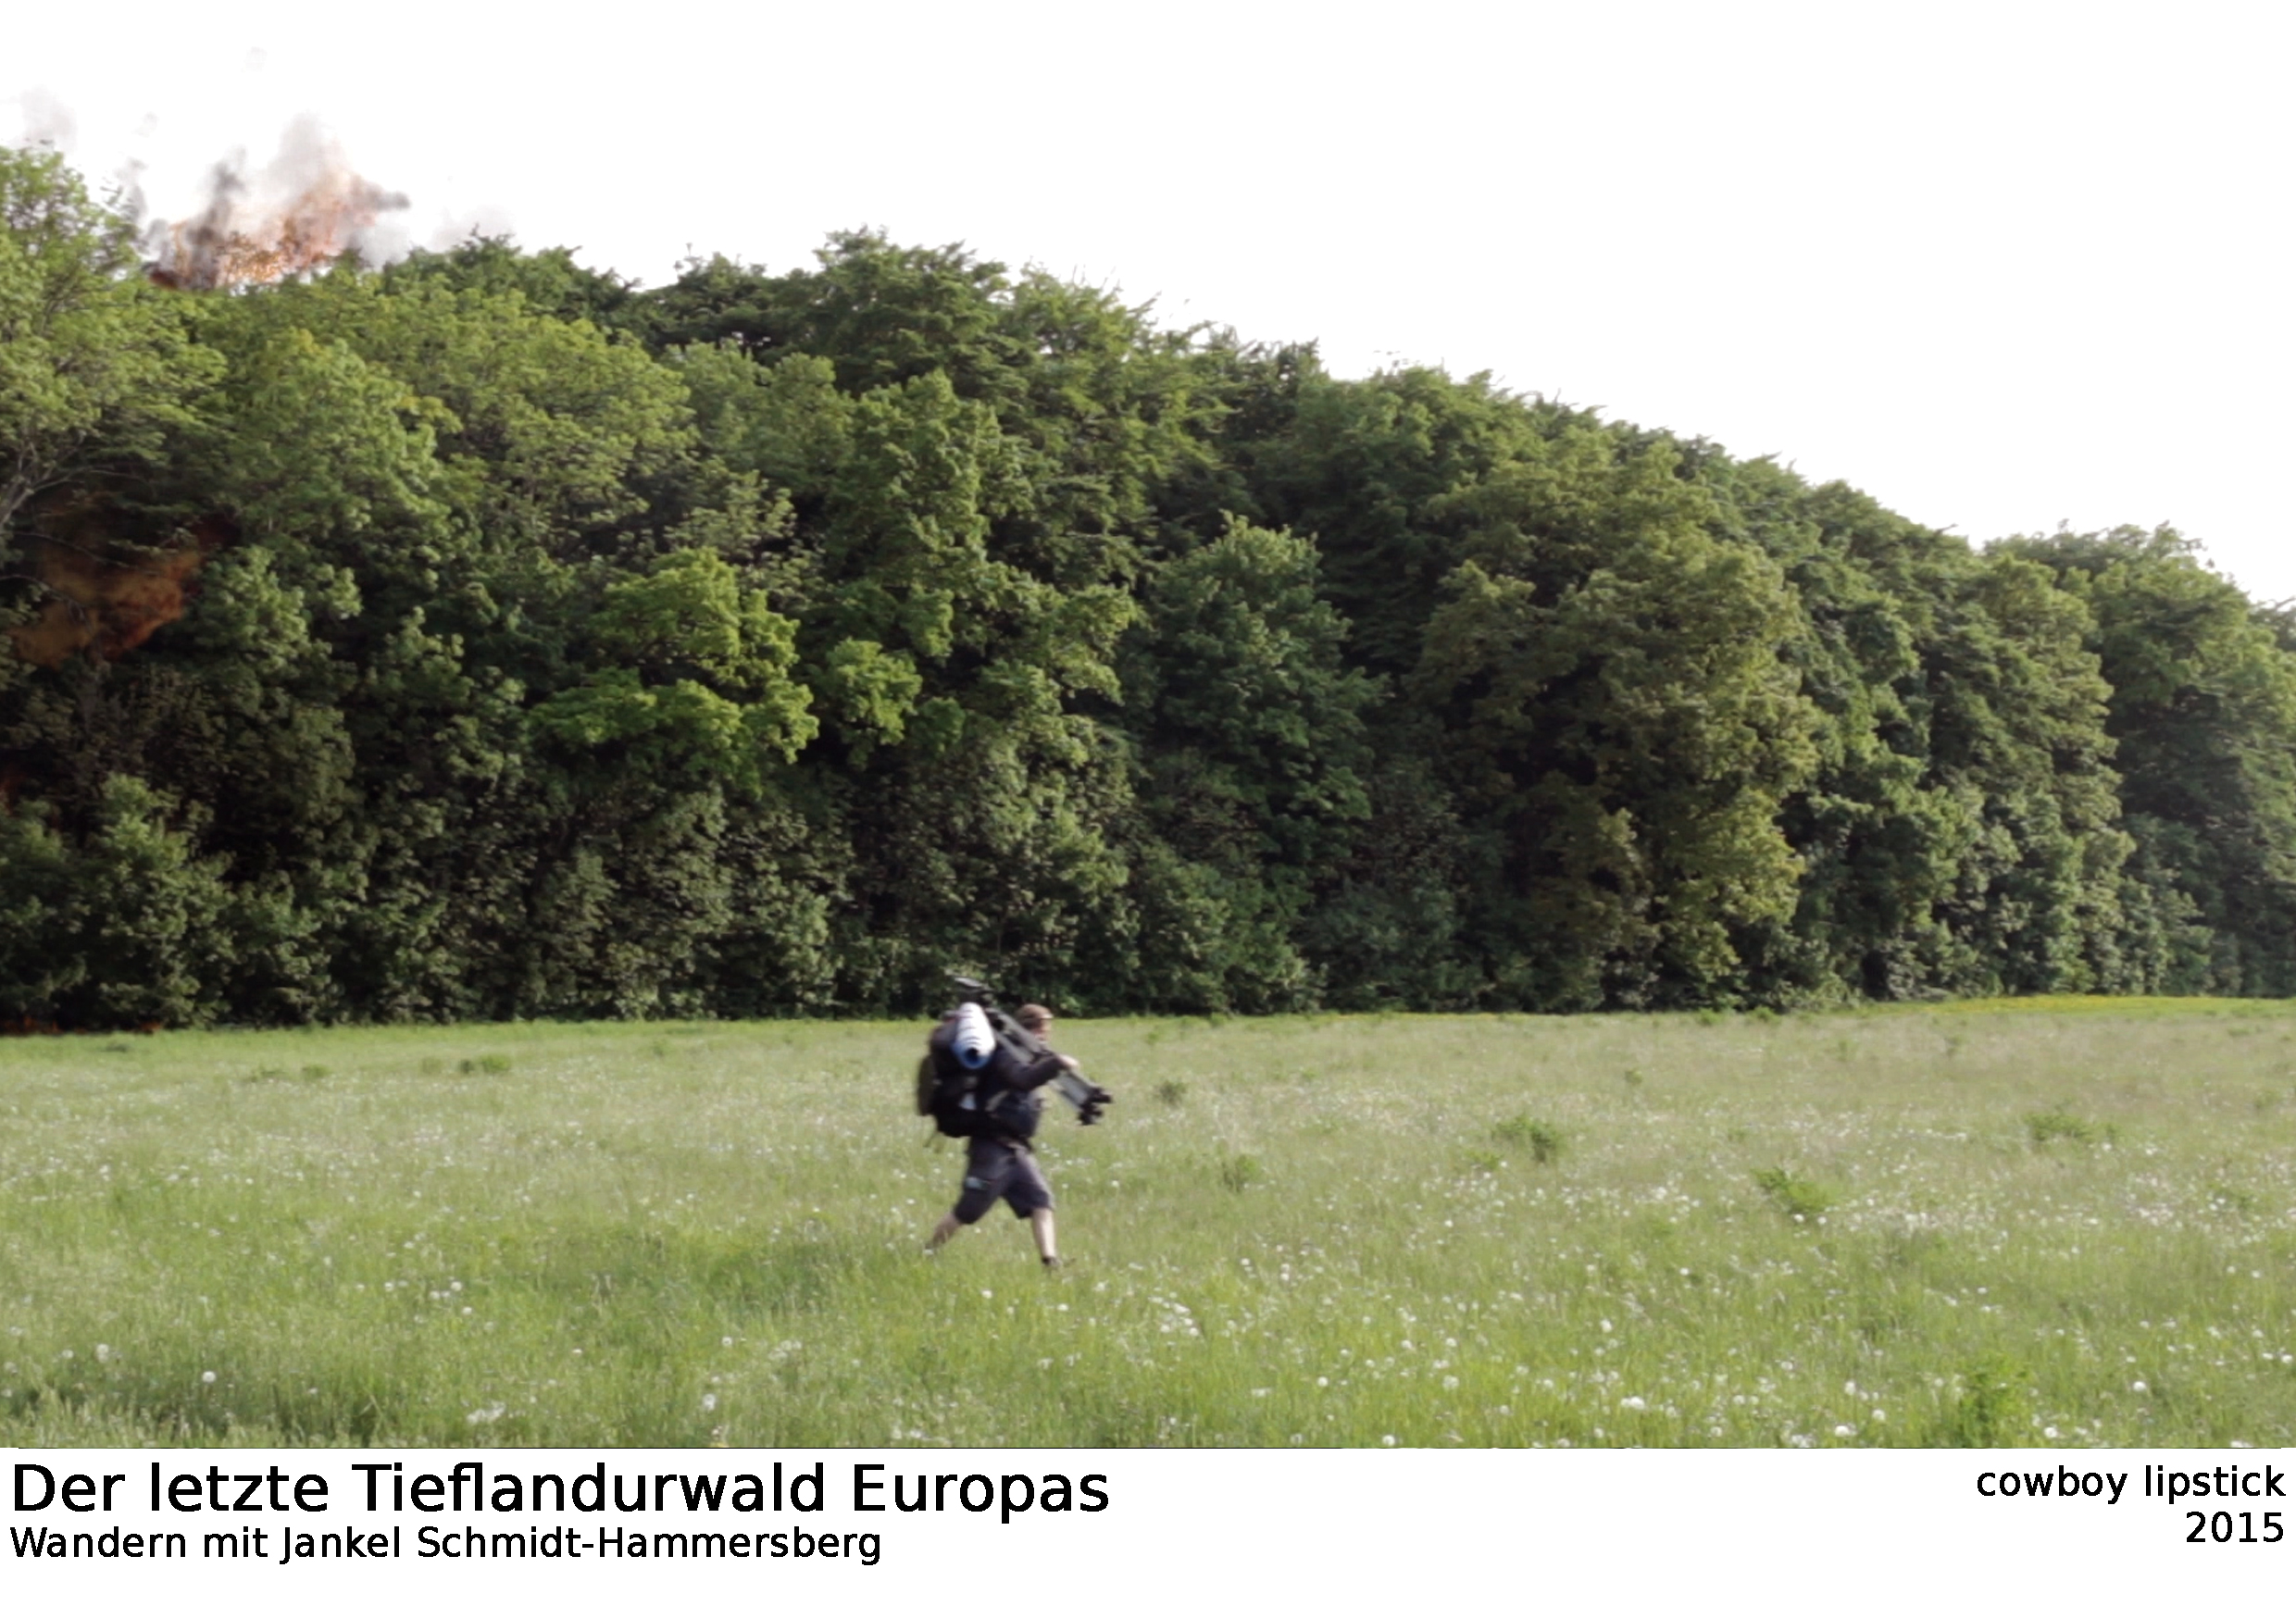 Der letzte Tieflandurwald Europas (Wandern mit Jankel Schmidt-Hammersberg)